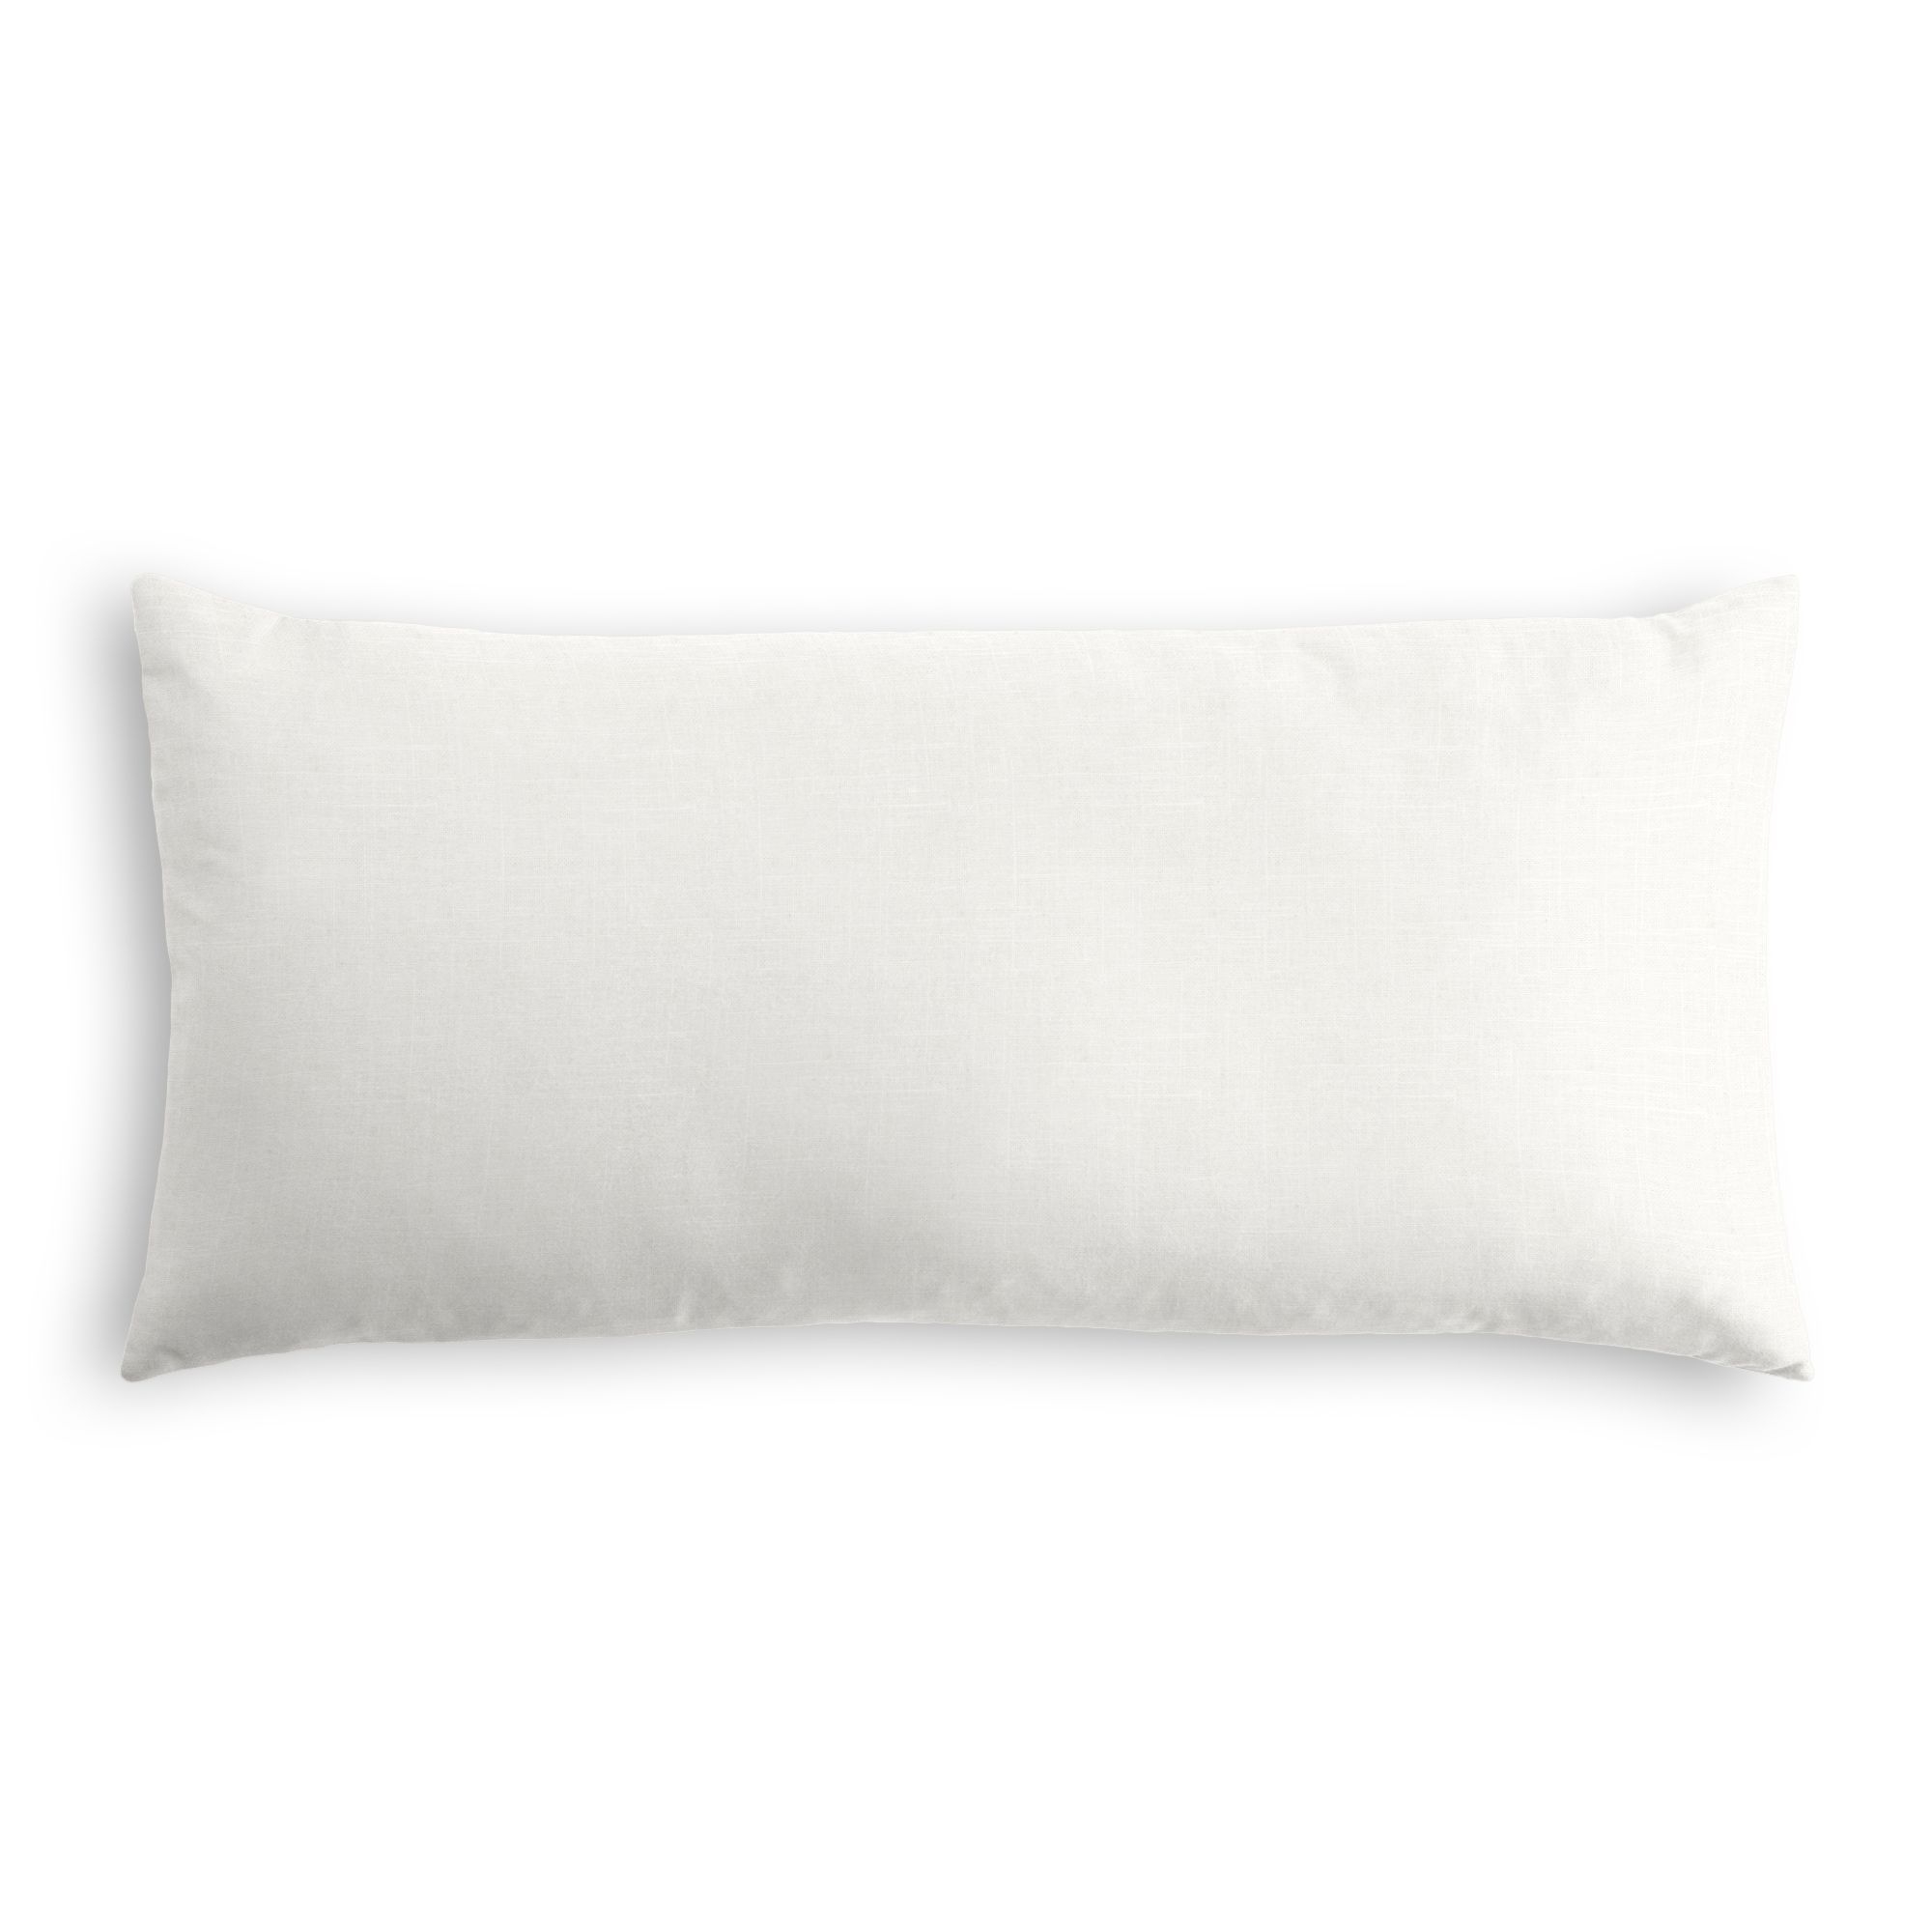 Classic Linen Lumbar Pillow, Ivory, 18" x 12" - Image 0